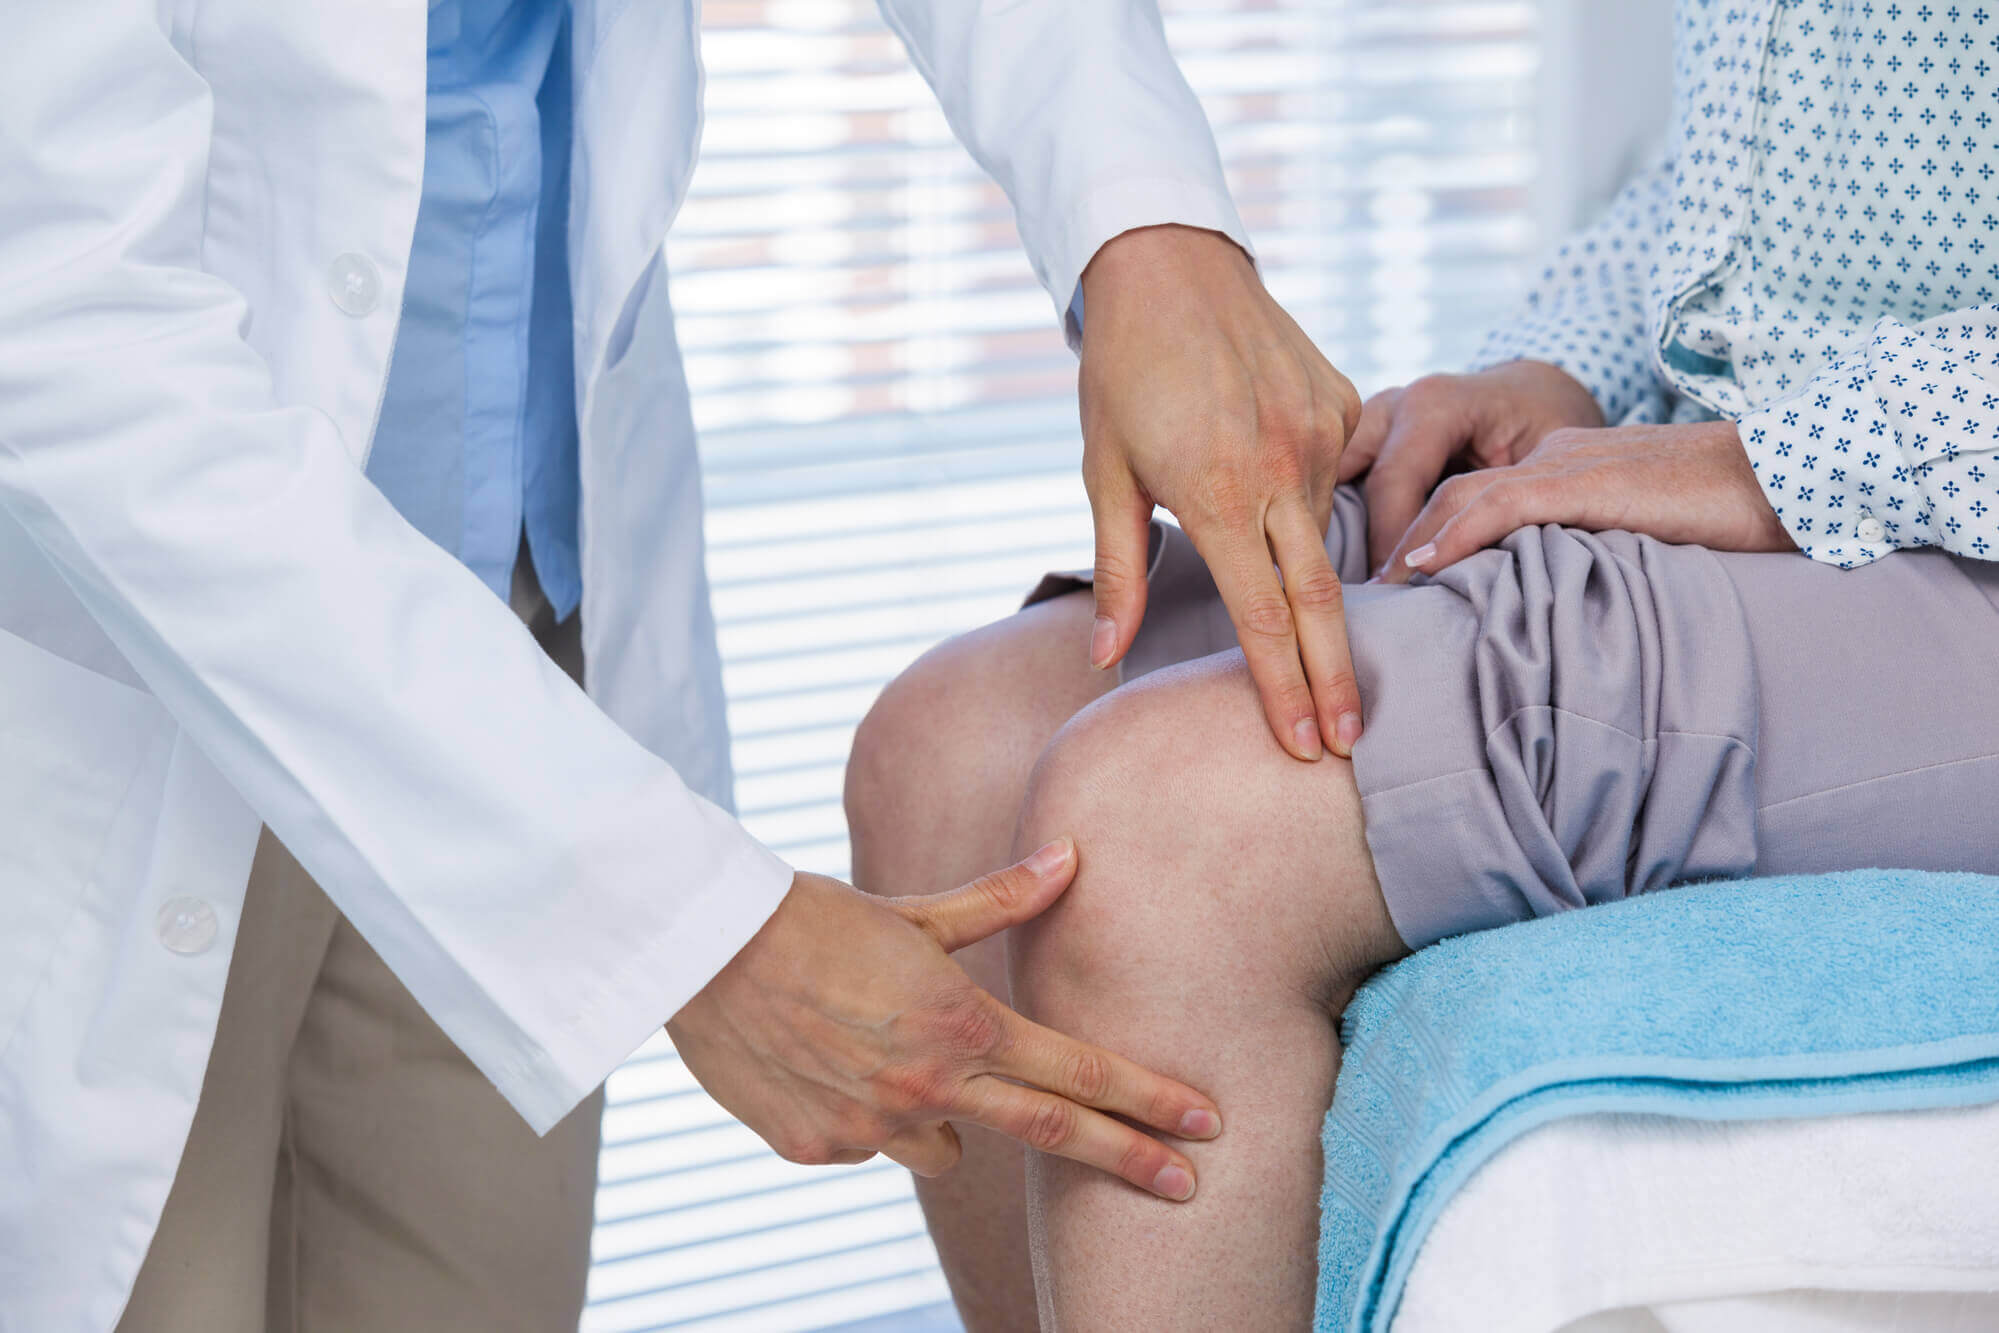 טיפול בכאבי ברכיים - דר' עמית רגב אורטופד מומחה להחלפת מפרקים